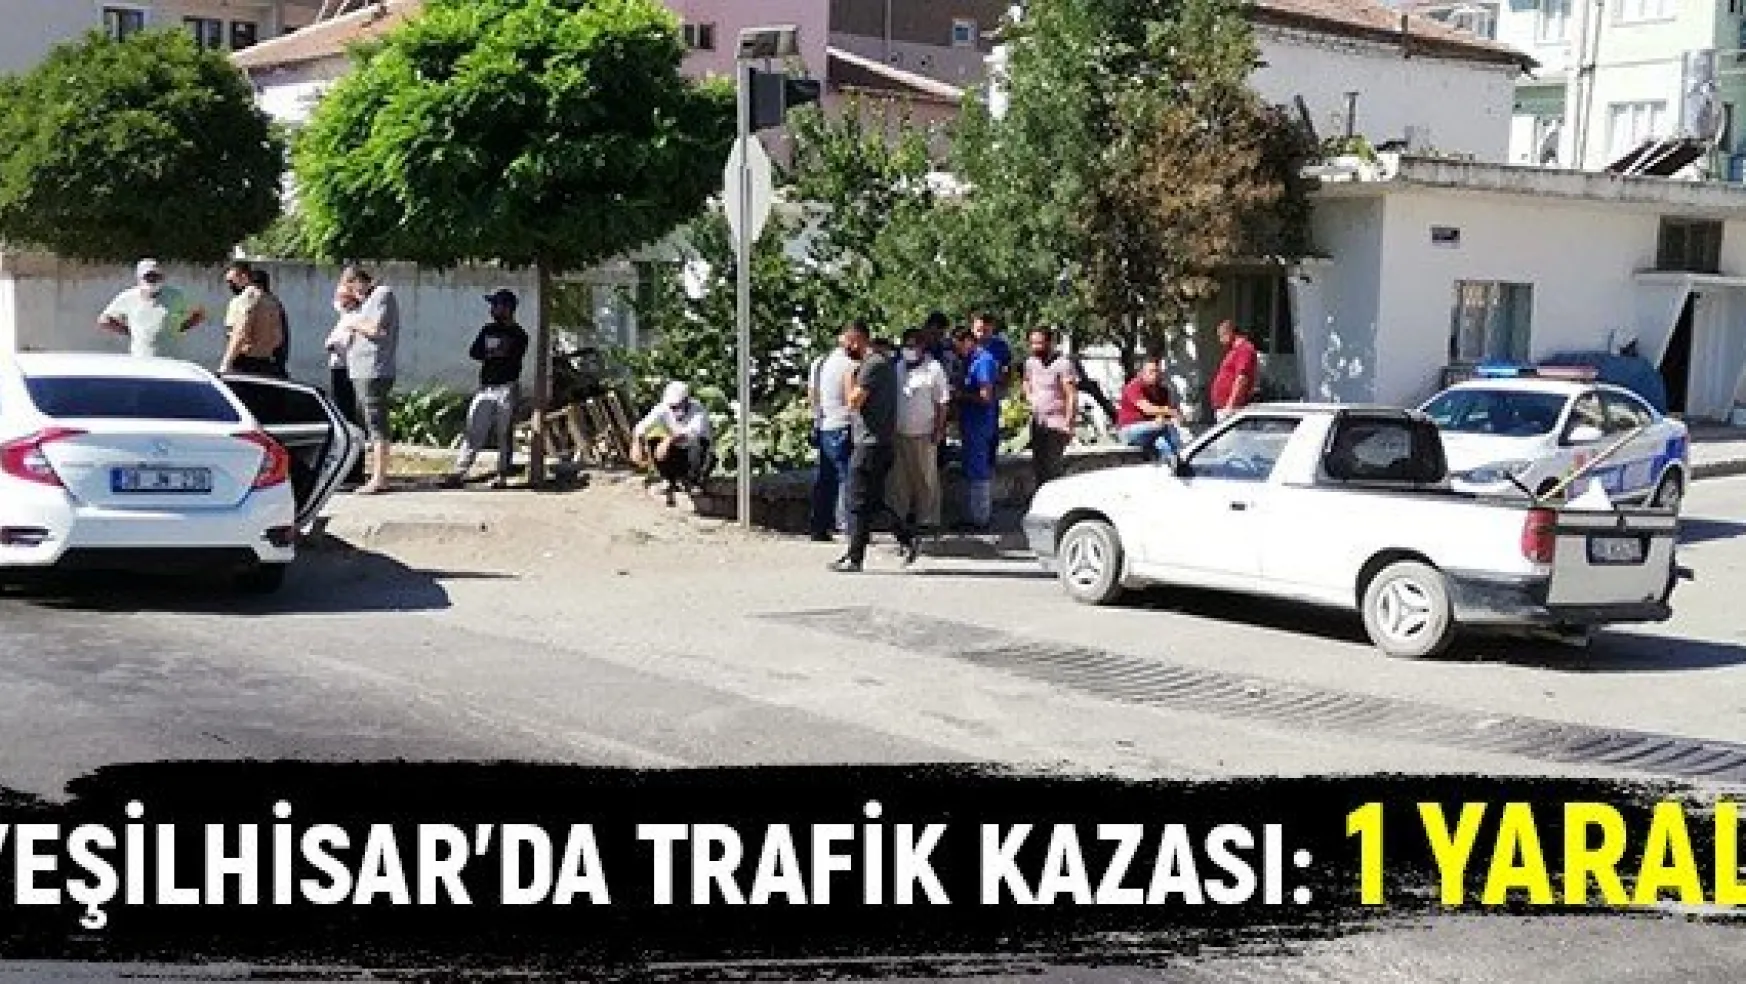 Yeşilhisar'da trafik kazası: 1 yaralı